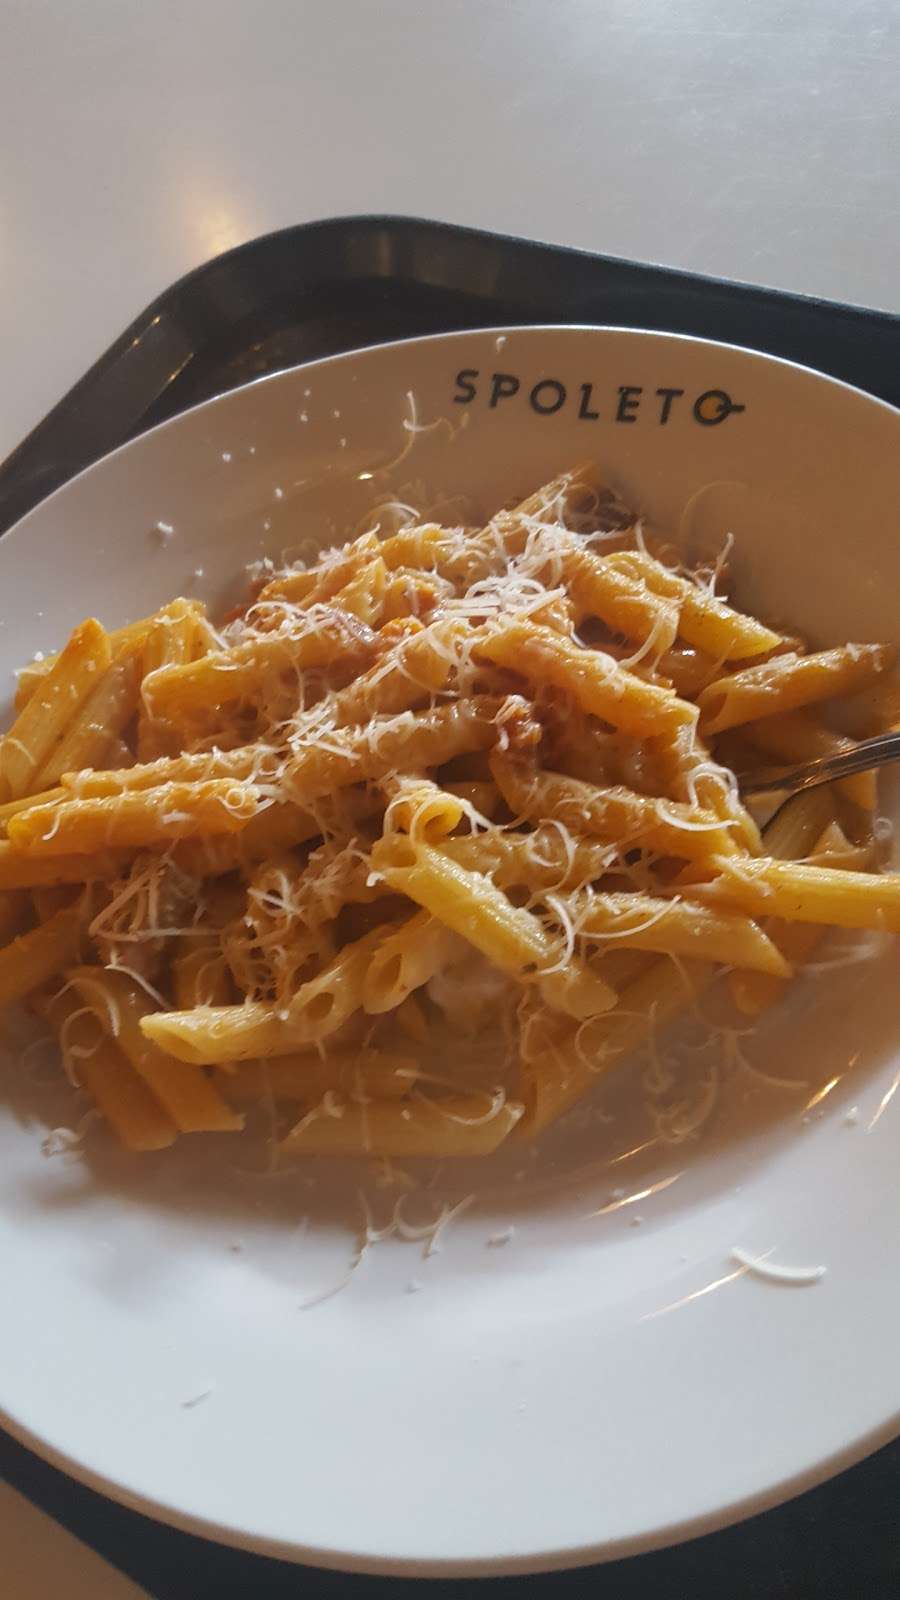 Spoleto - My Italian Kitchen (The Florida Mall) | 8001 S Orange Blossom Trail #199, Orlando, FL 32809, USA | Phone: (407) 857-6579